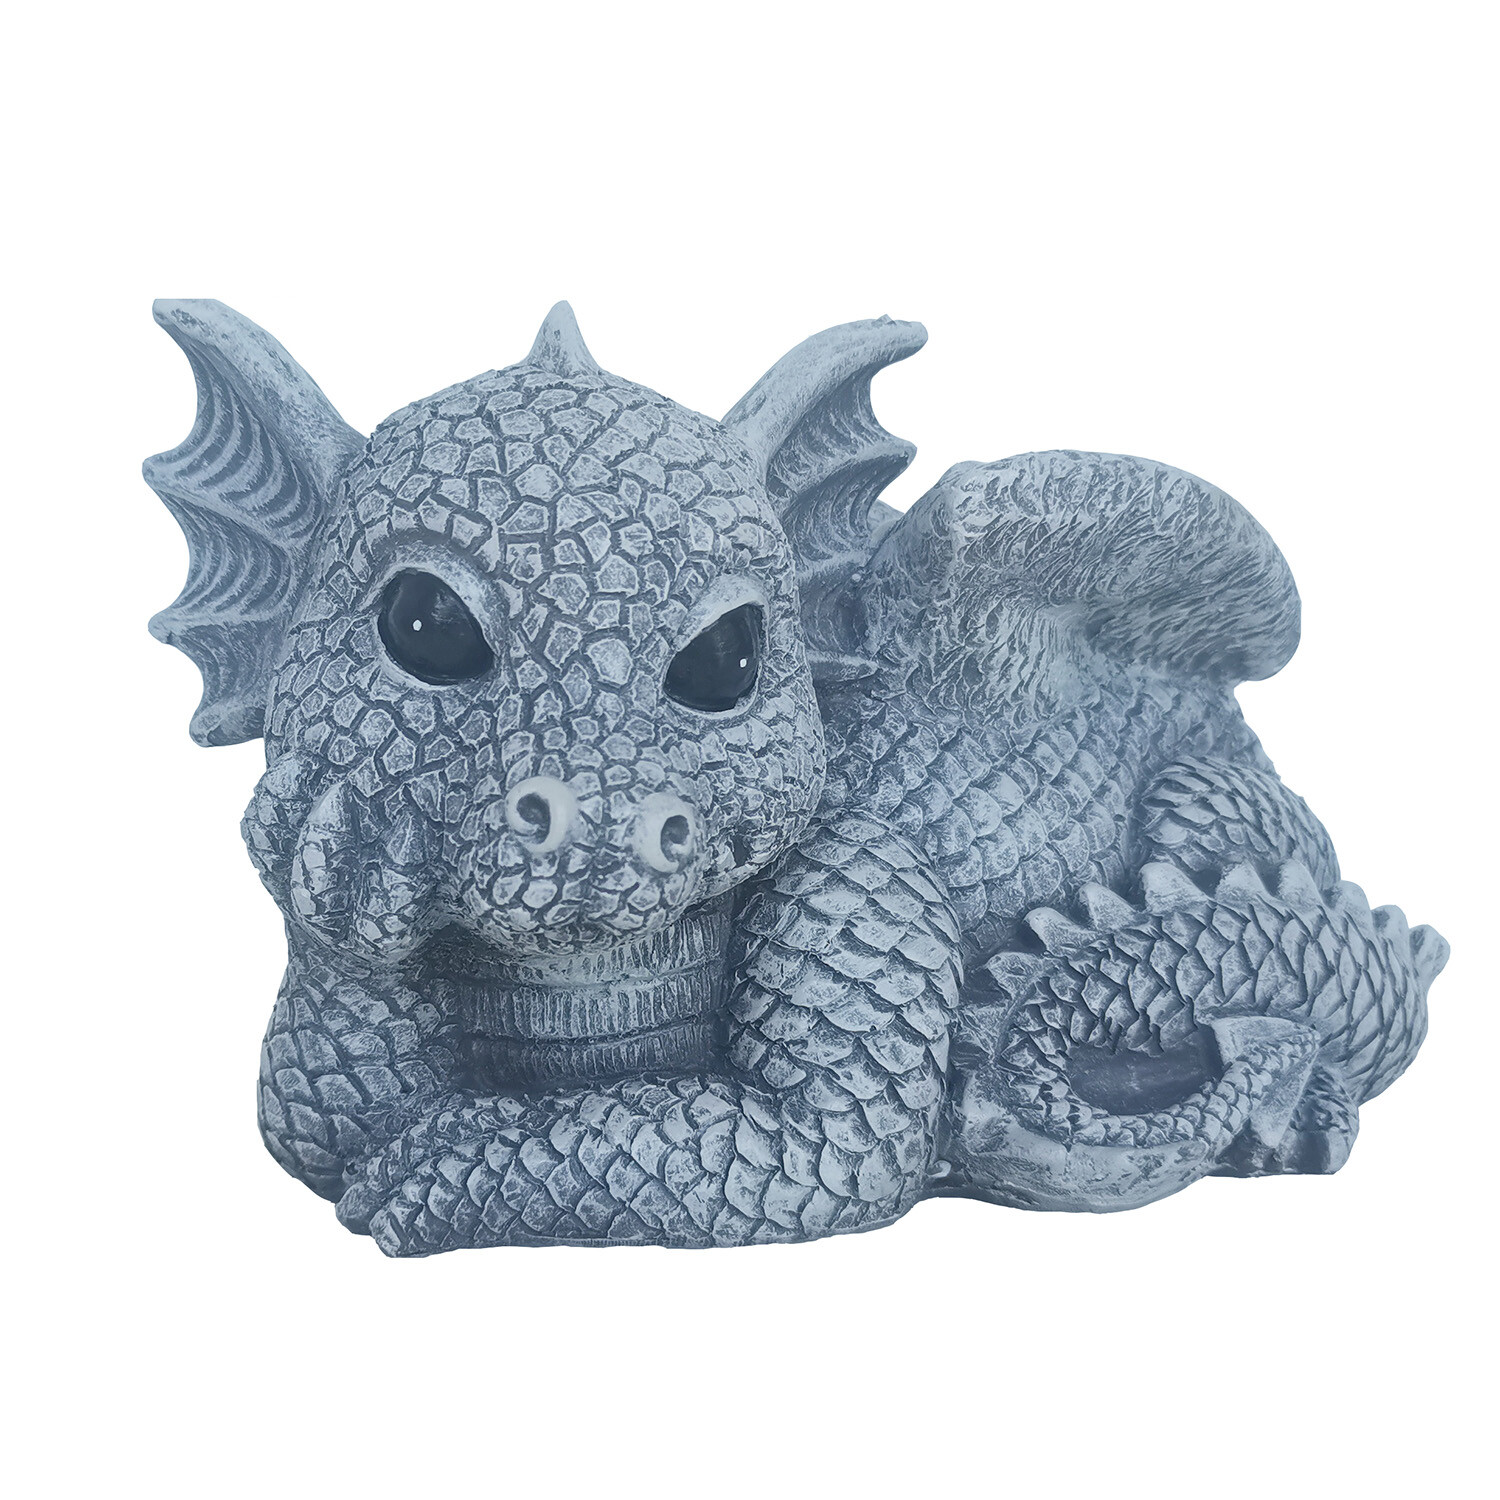 Dragon Ornament Image